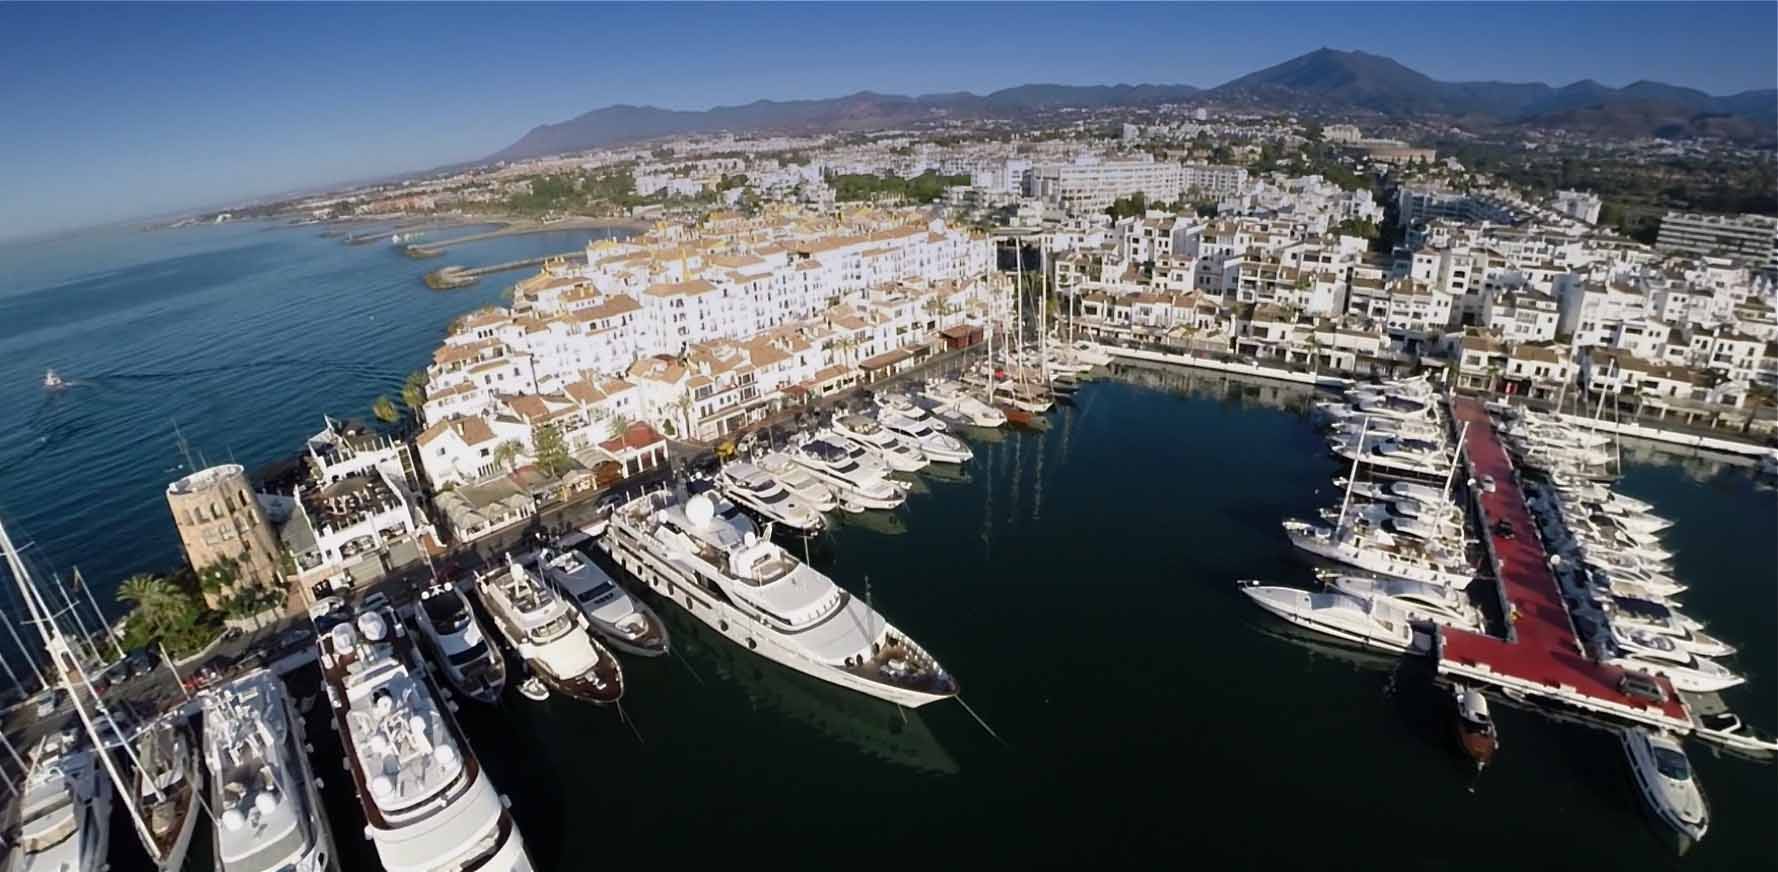 Marinas de Andalucía, asociación profesional consolidada en la Costa del Sol